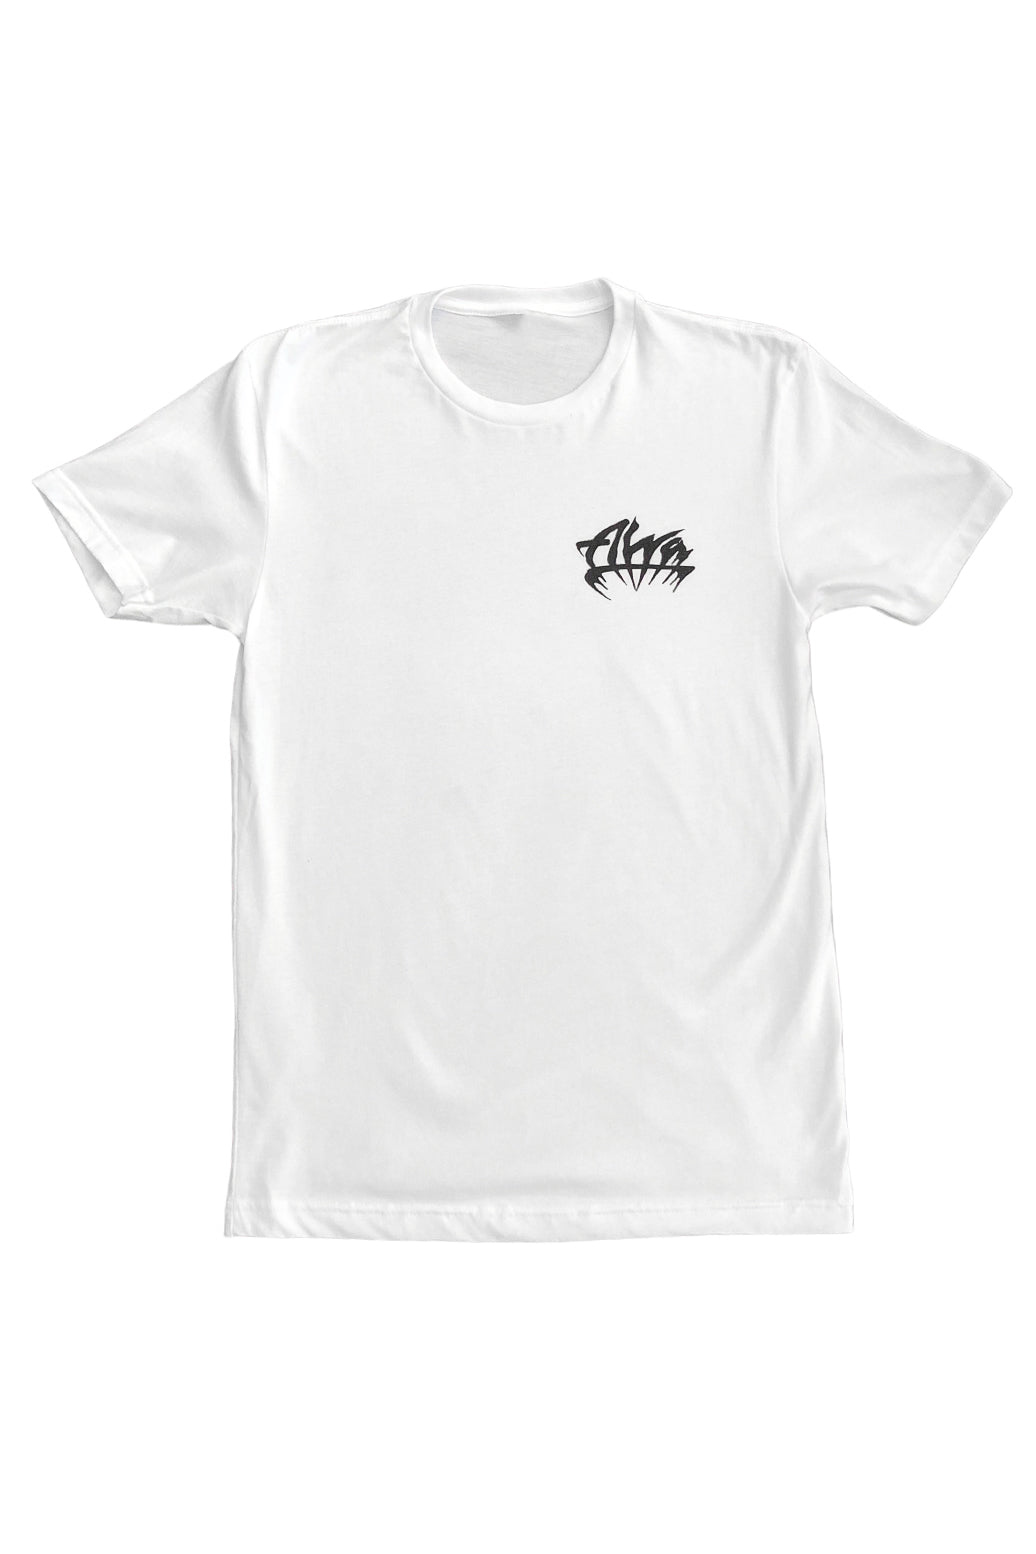 ALVA WHITE GOTH LOGO T-Shirt